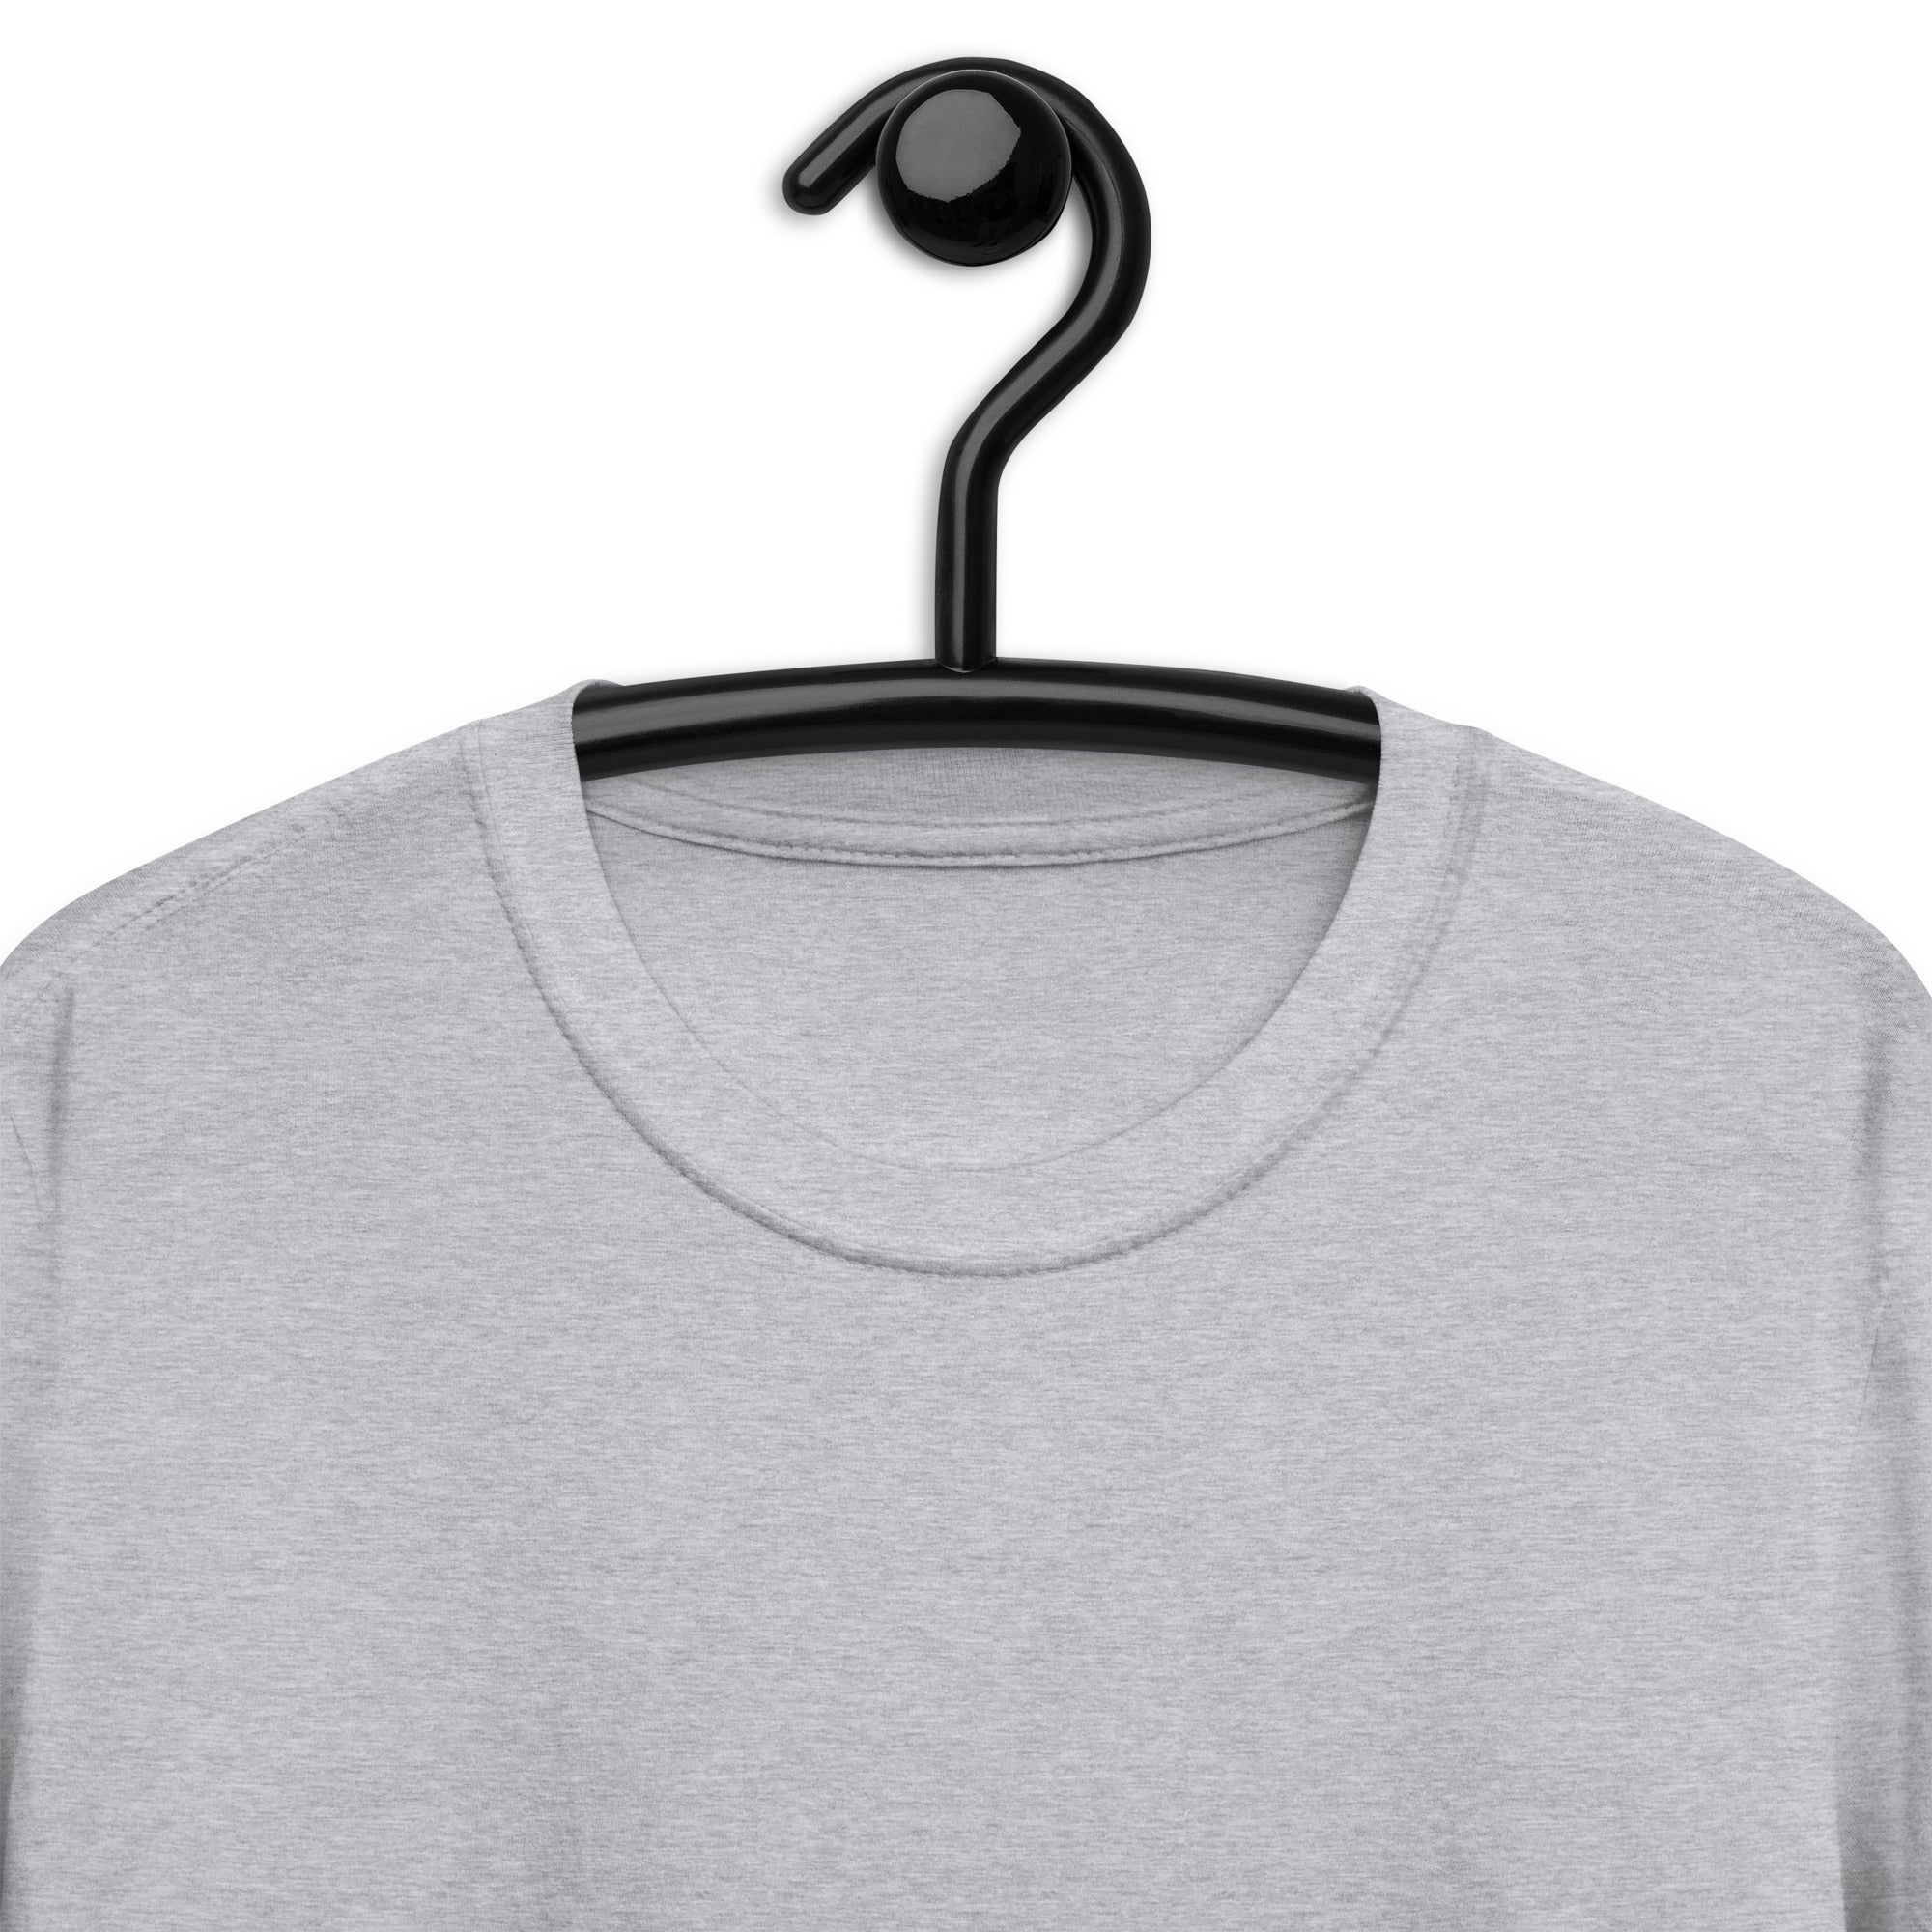 Short-Sleeve Unisex T-Shirt | HR Queen